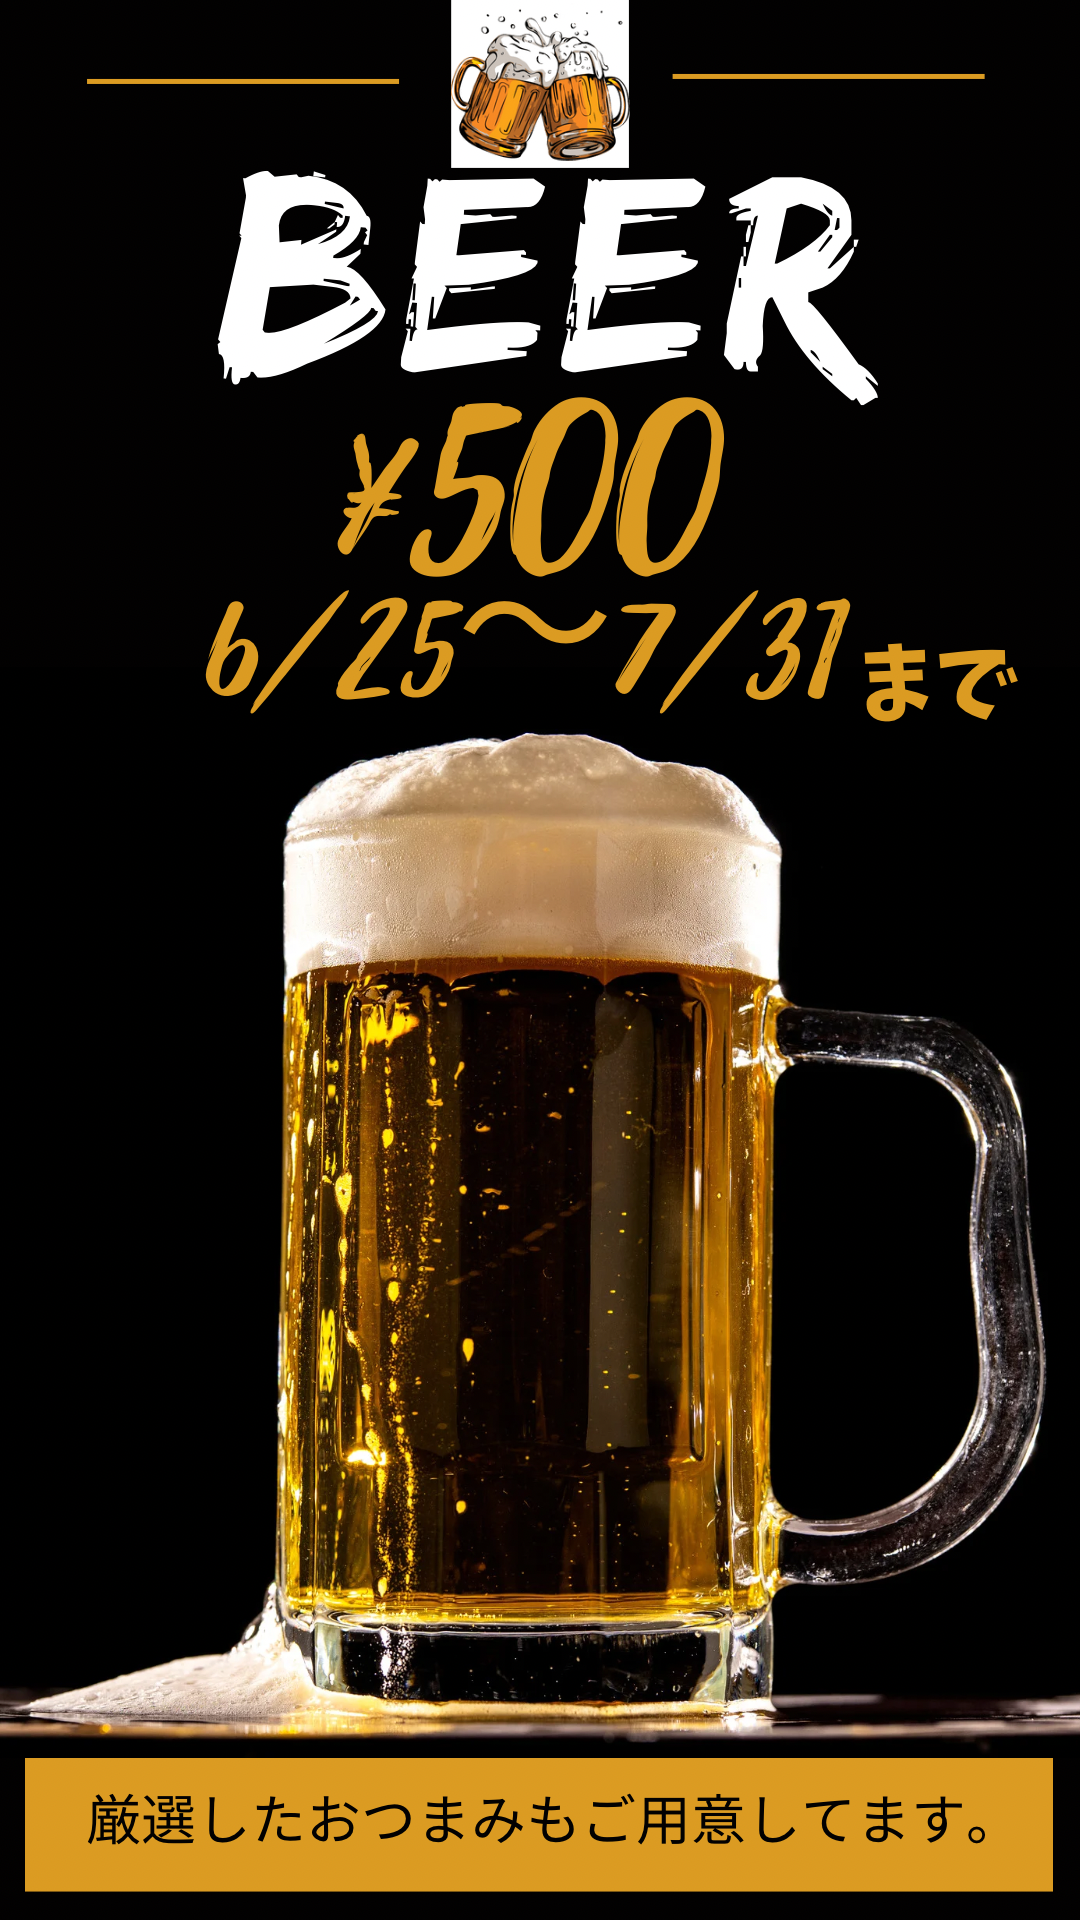 Happy summer ビールフェア